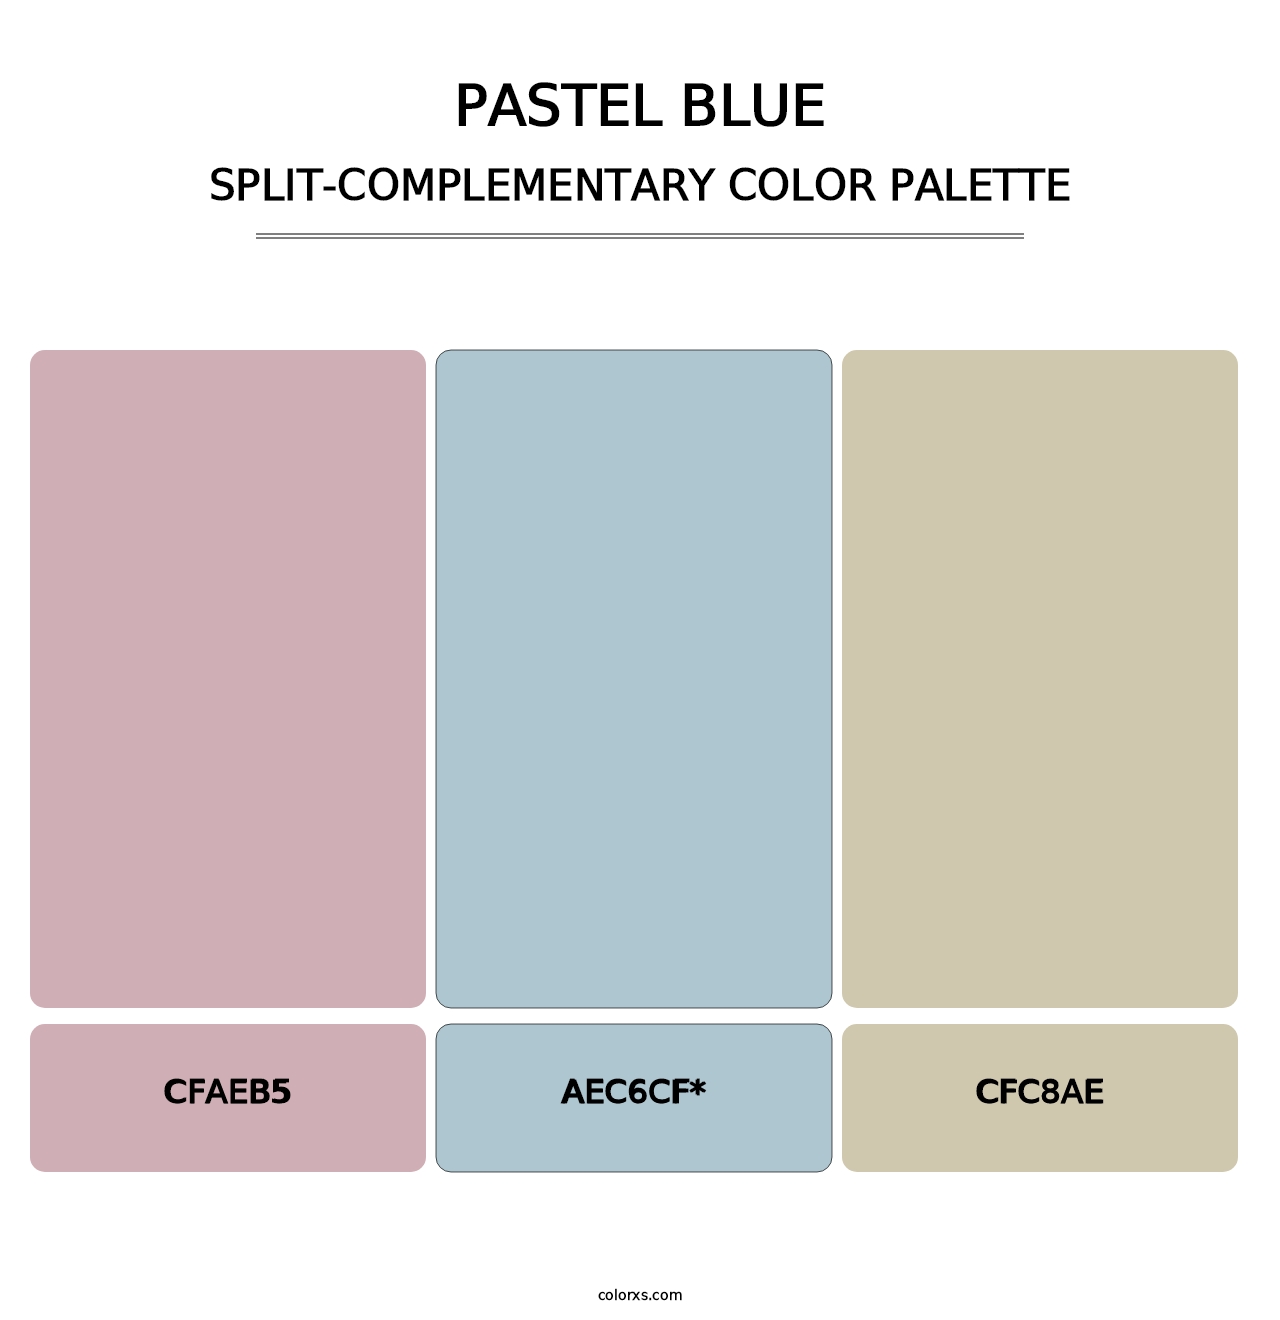 Pastel Blue - Split-Complementary Color Palette